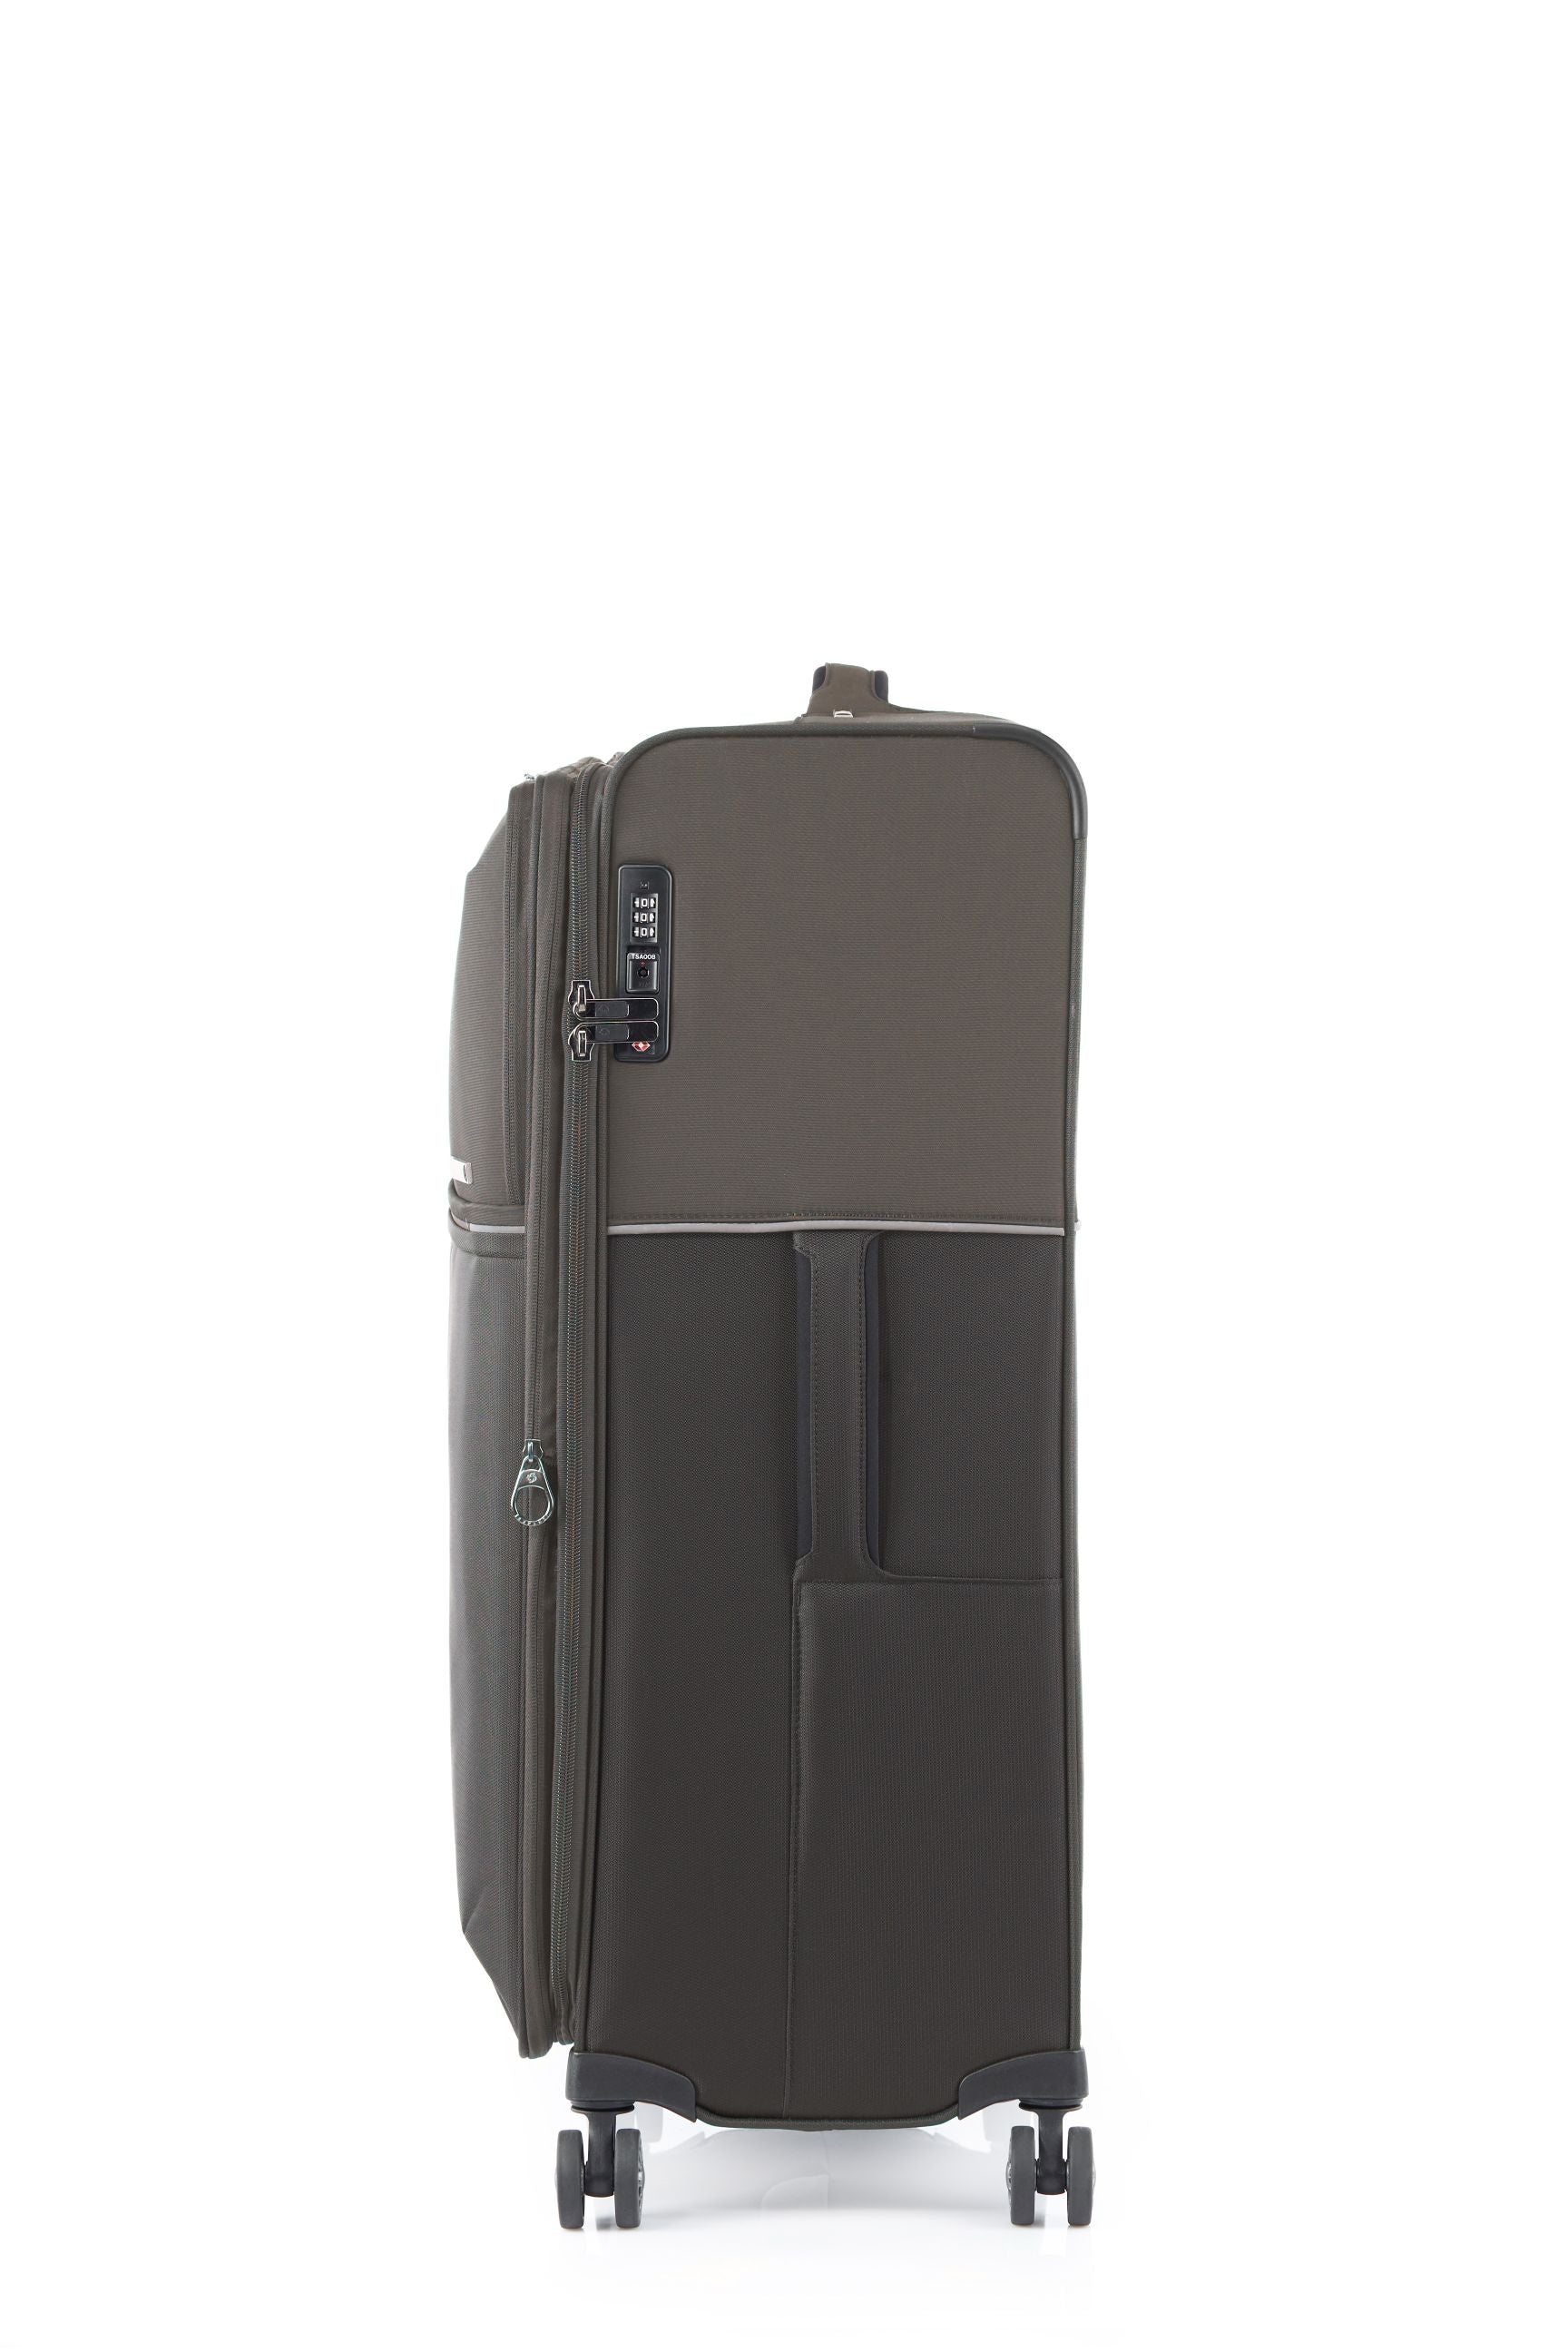 Samsonite 73HR 78cm Large Suitcase - Platinum Grey-3